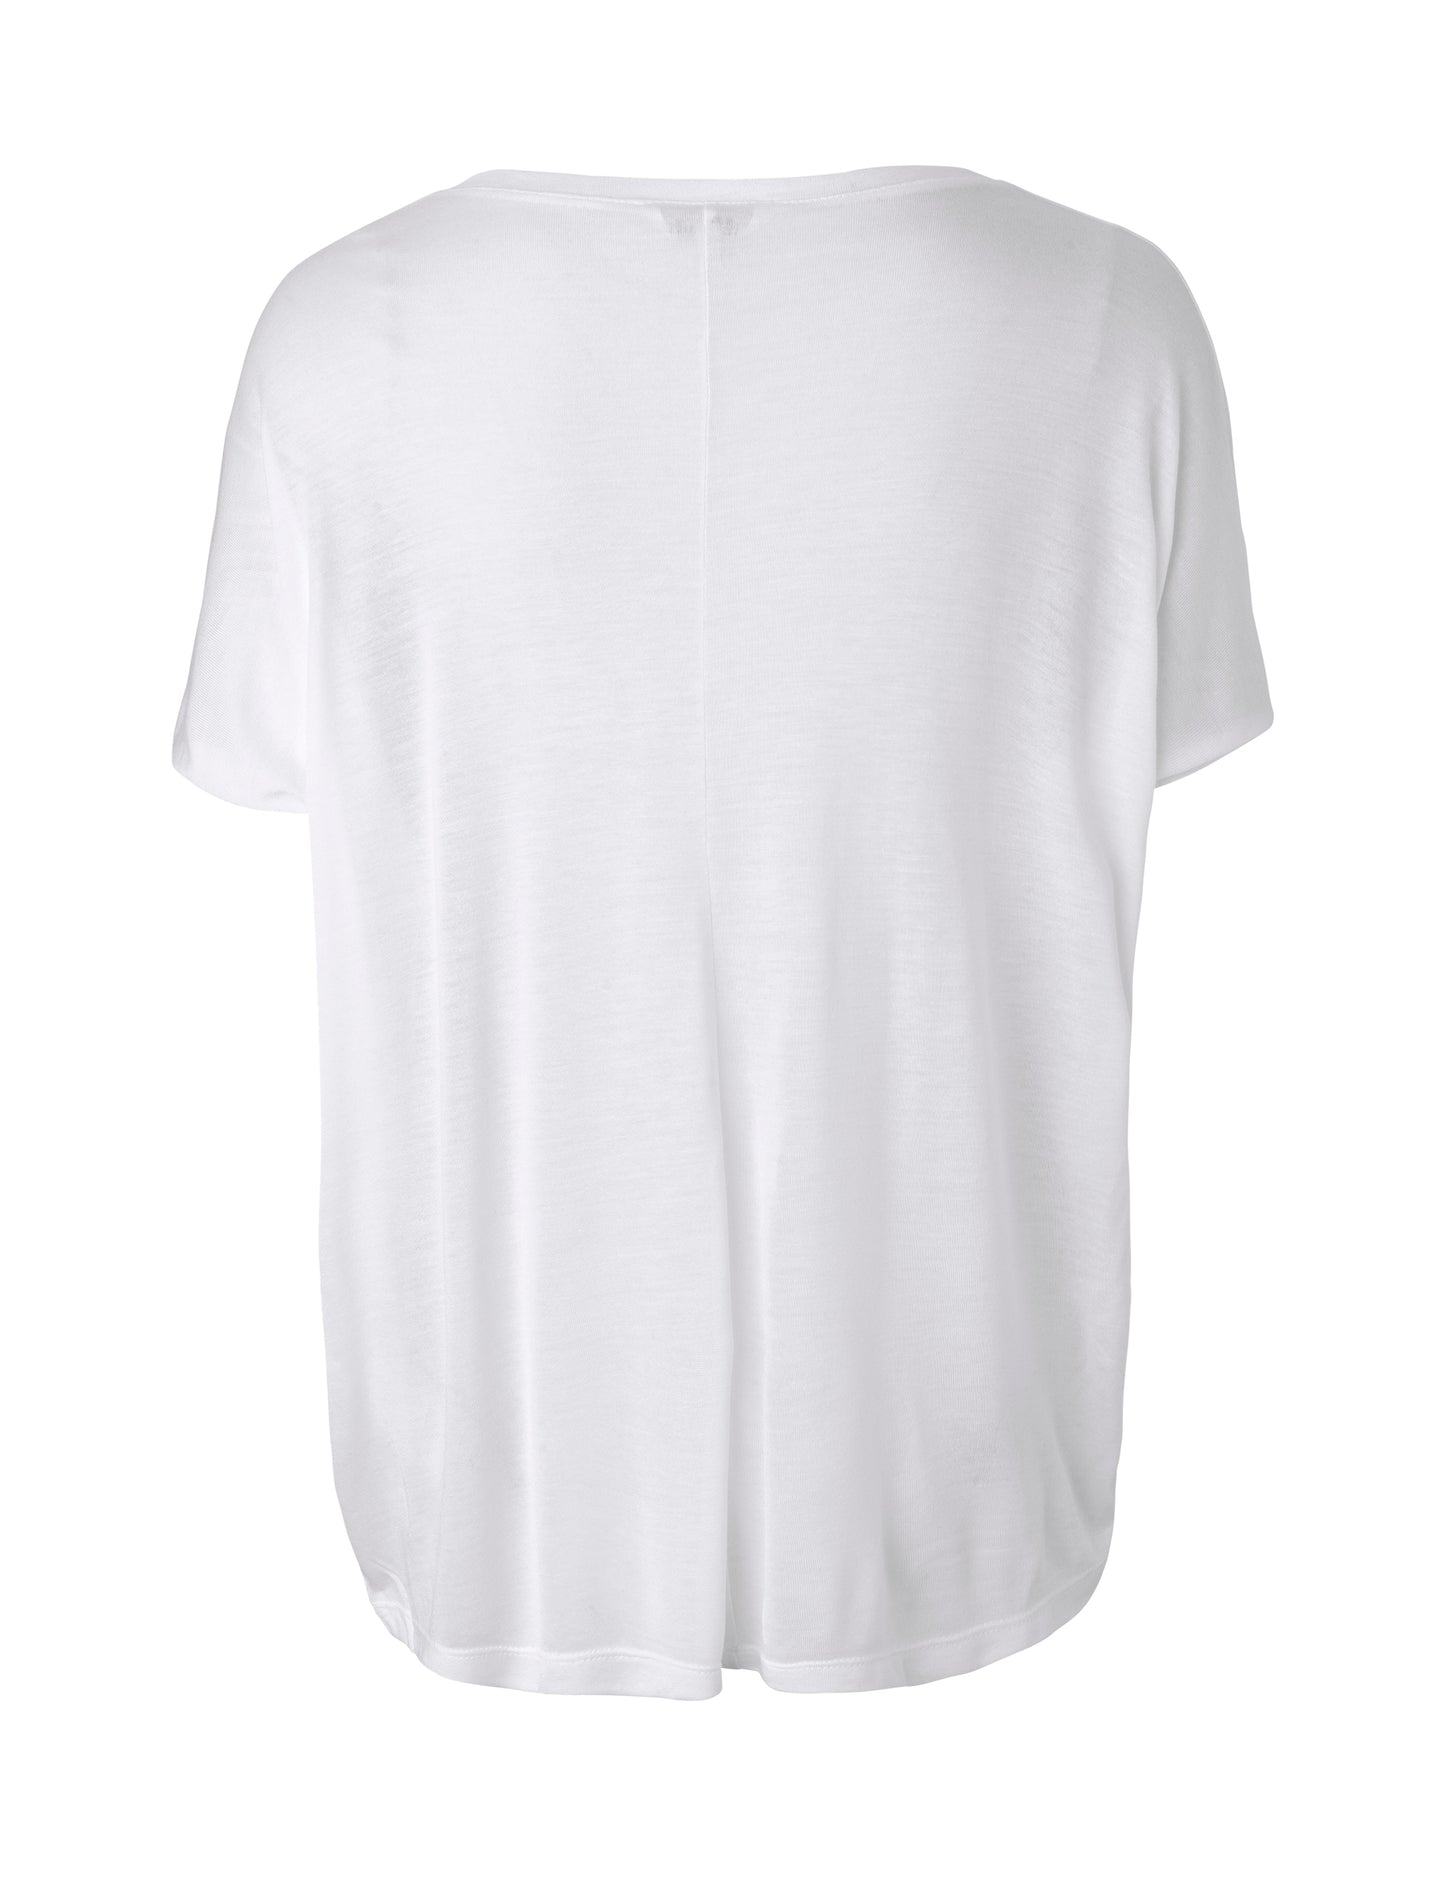 mbymPROUD T-Shirt White